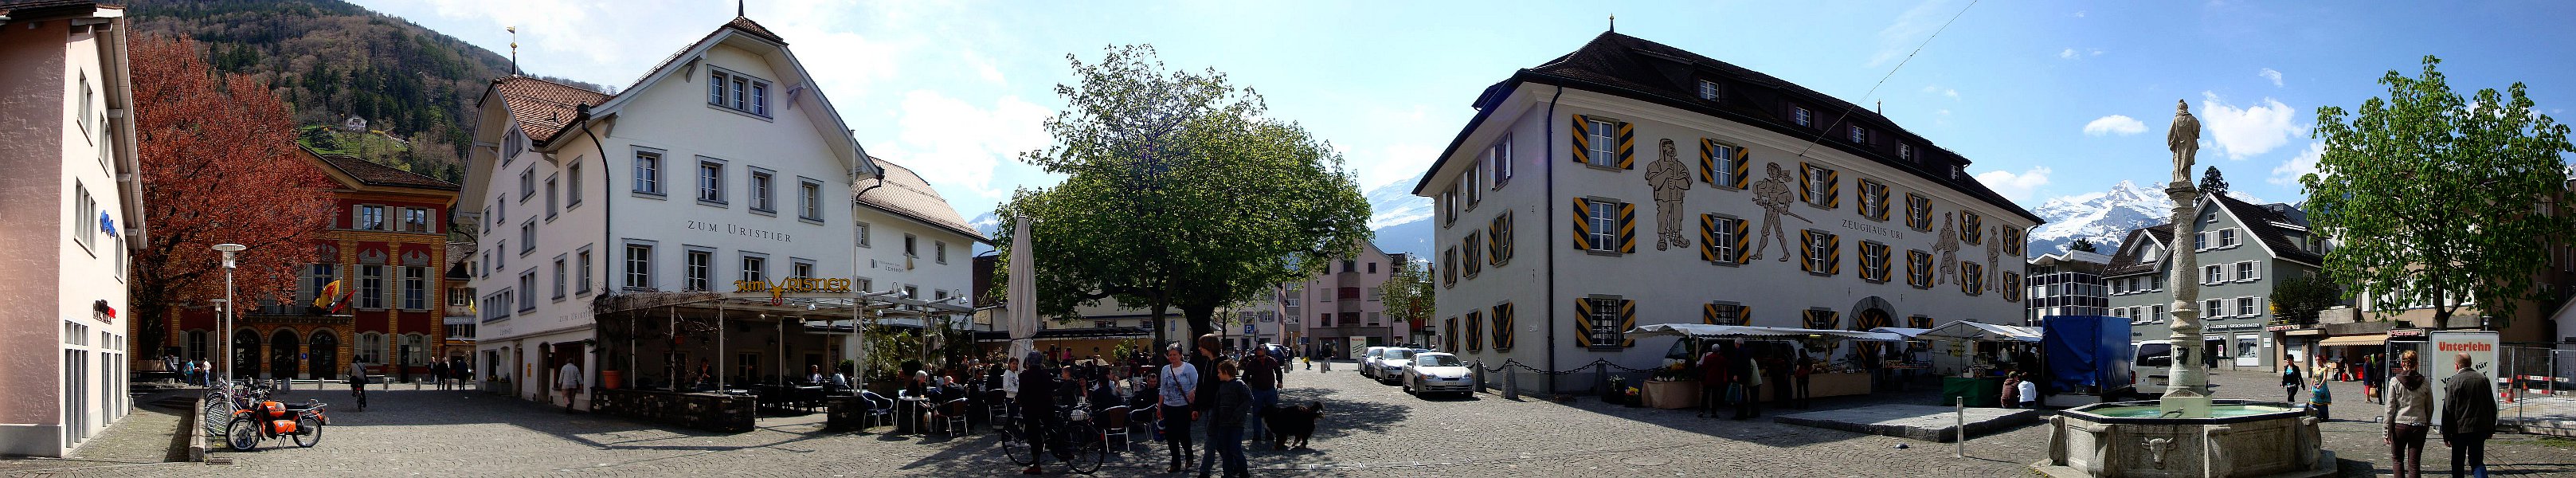 Altdorf, ist eine politische Gemeinde und der Hauptort des Schweizer